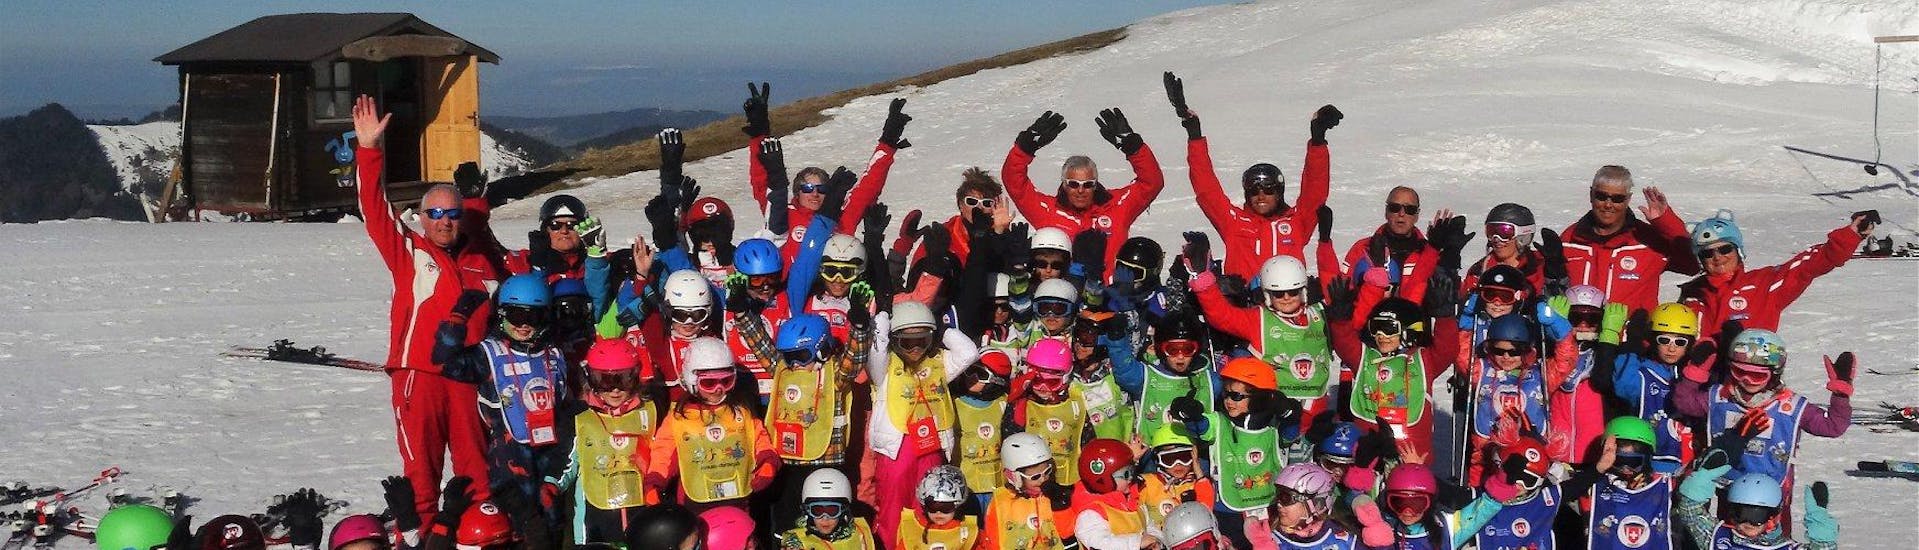 Des élèves de l'école de ski suisse Charmey et leurs moniteurs de ski sont réunis pour une photo de groupe afin de fêter leur Cours de ski Enfants (6-15 ans) - 4 cours - Tous niveaux.